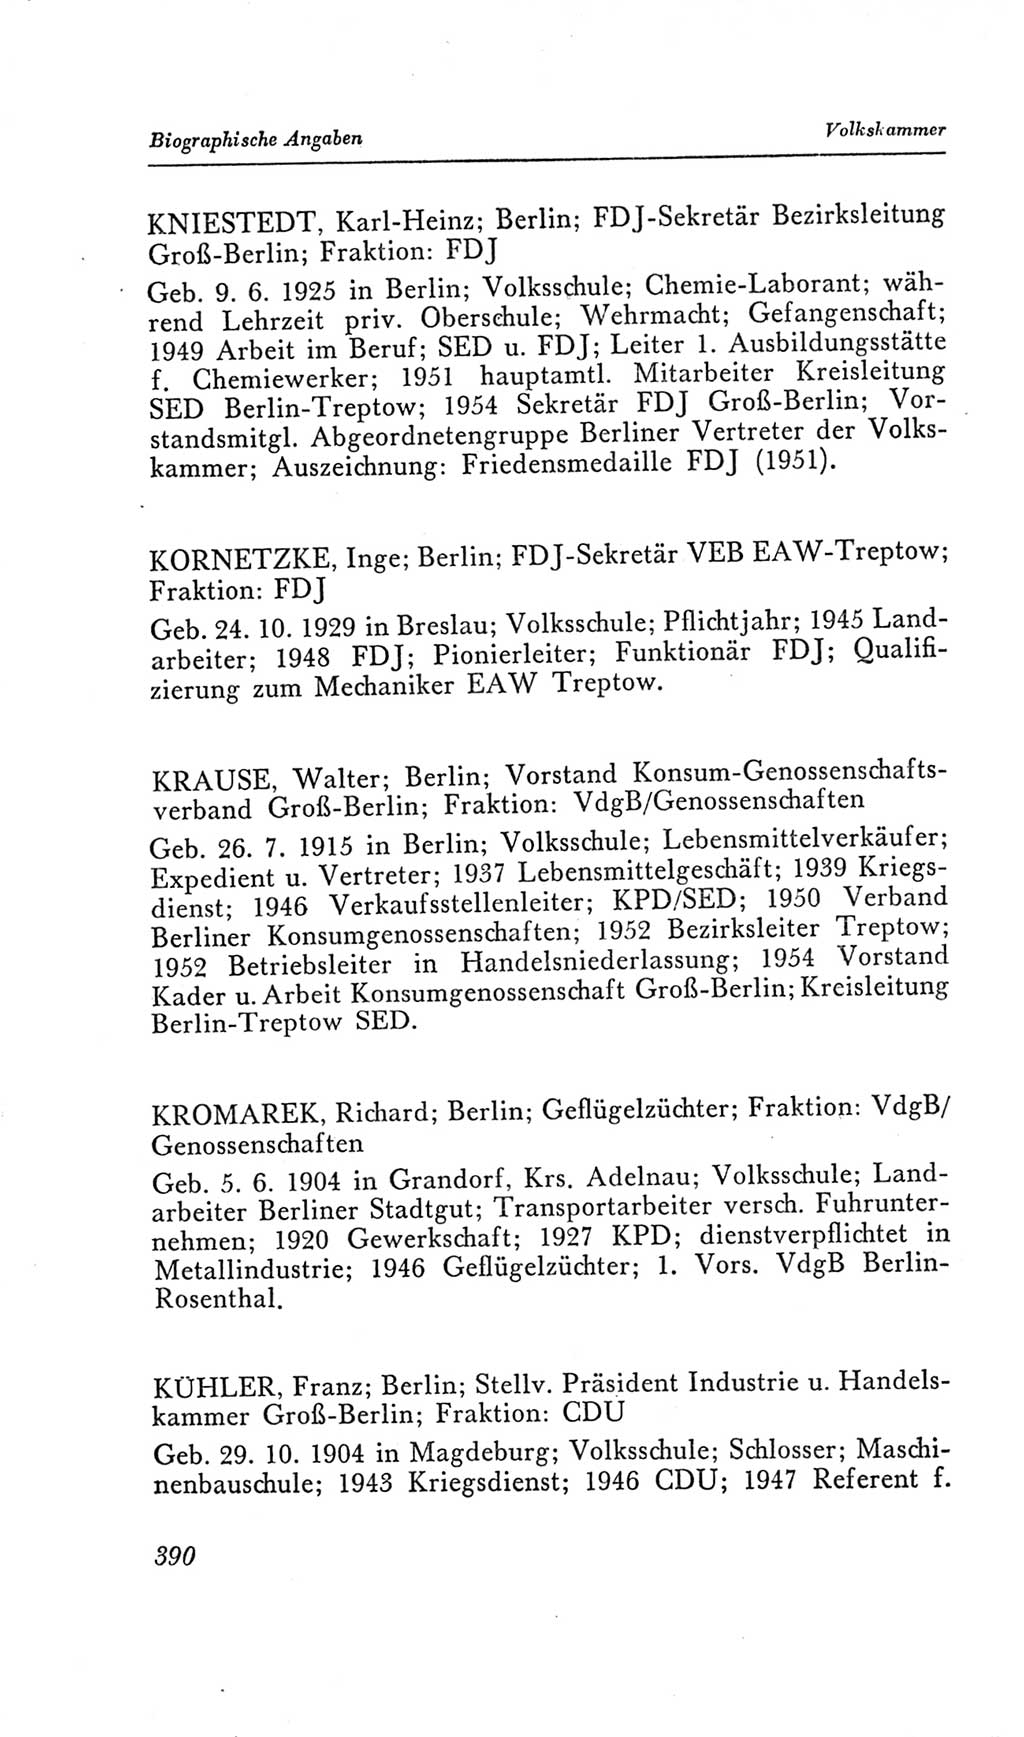 Handbuch der Volkskammer (VK) der Deutschen Demokratischen Republik (DDR), 2. Wahlperiode 1954-1958, Seite 390 (Hdb. VK. DDR, 2. WP. 1954-1958, S. 390)